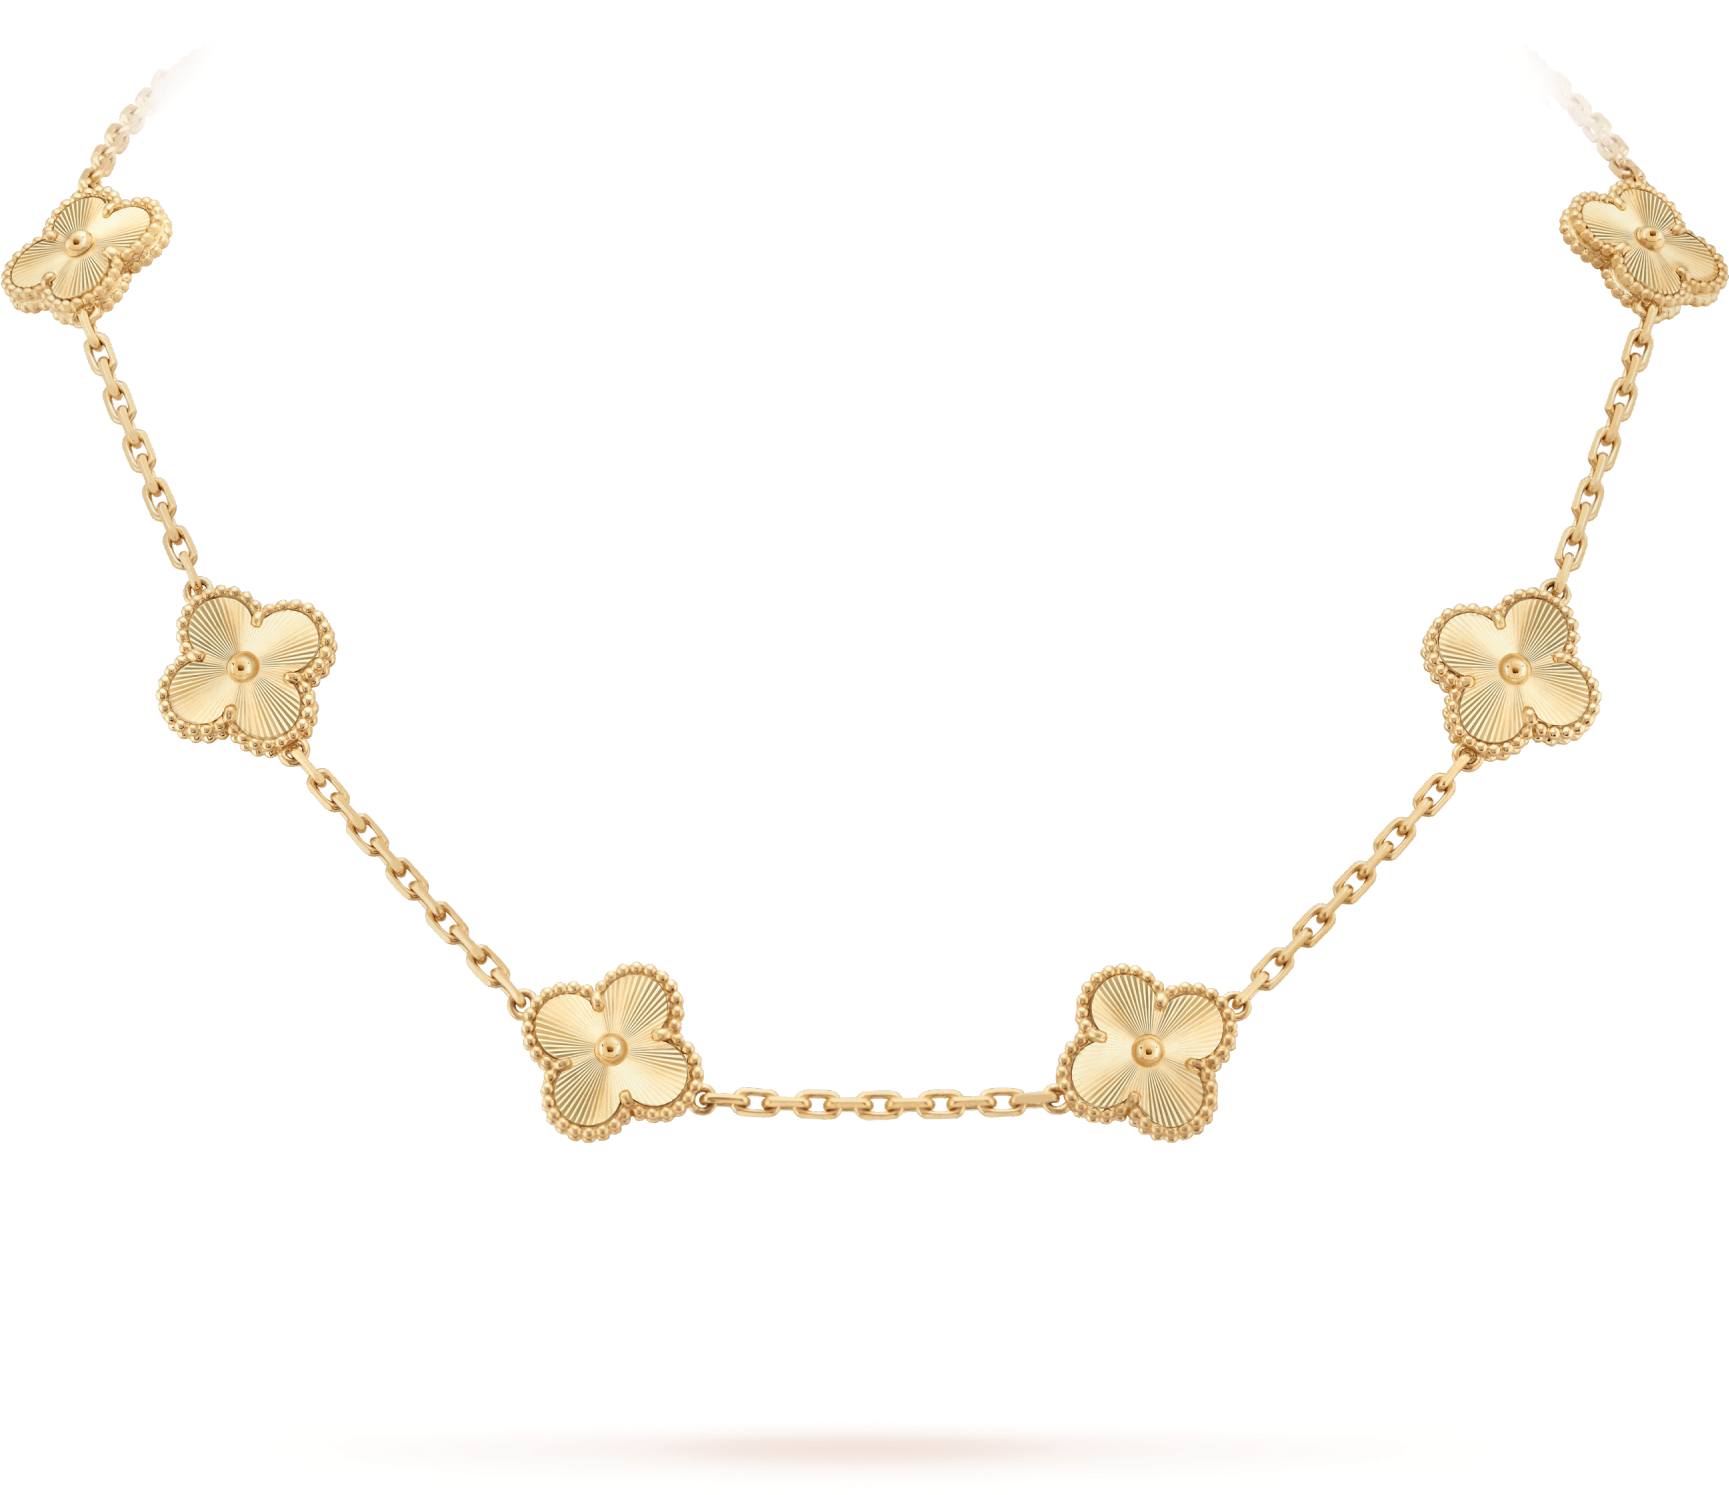 Женская золотая цепочка PNG изображения фон